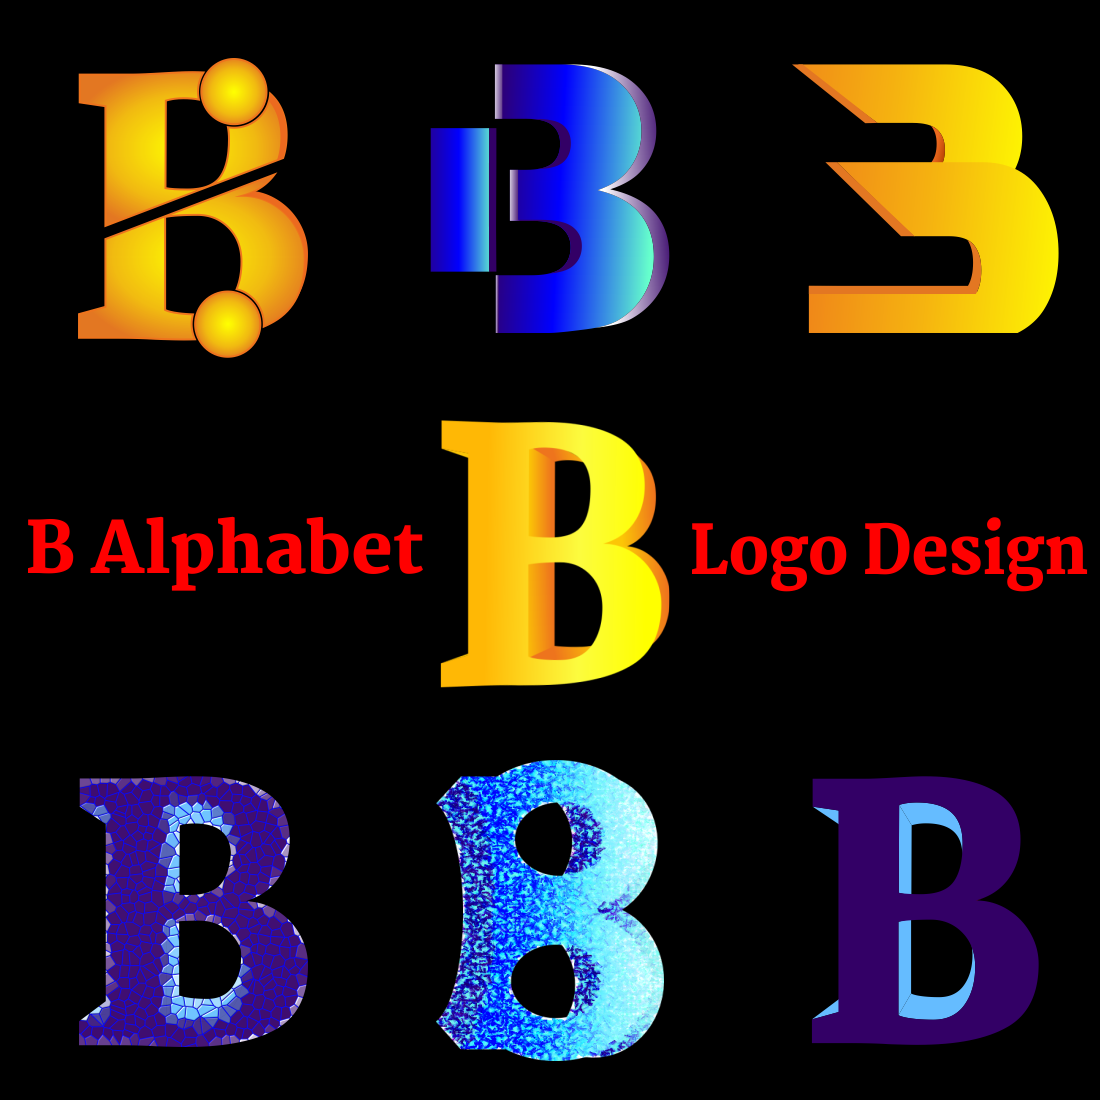 B alphabet logo design cover image.